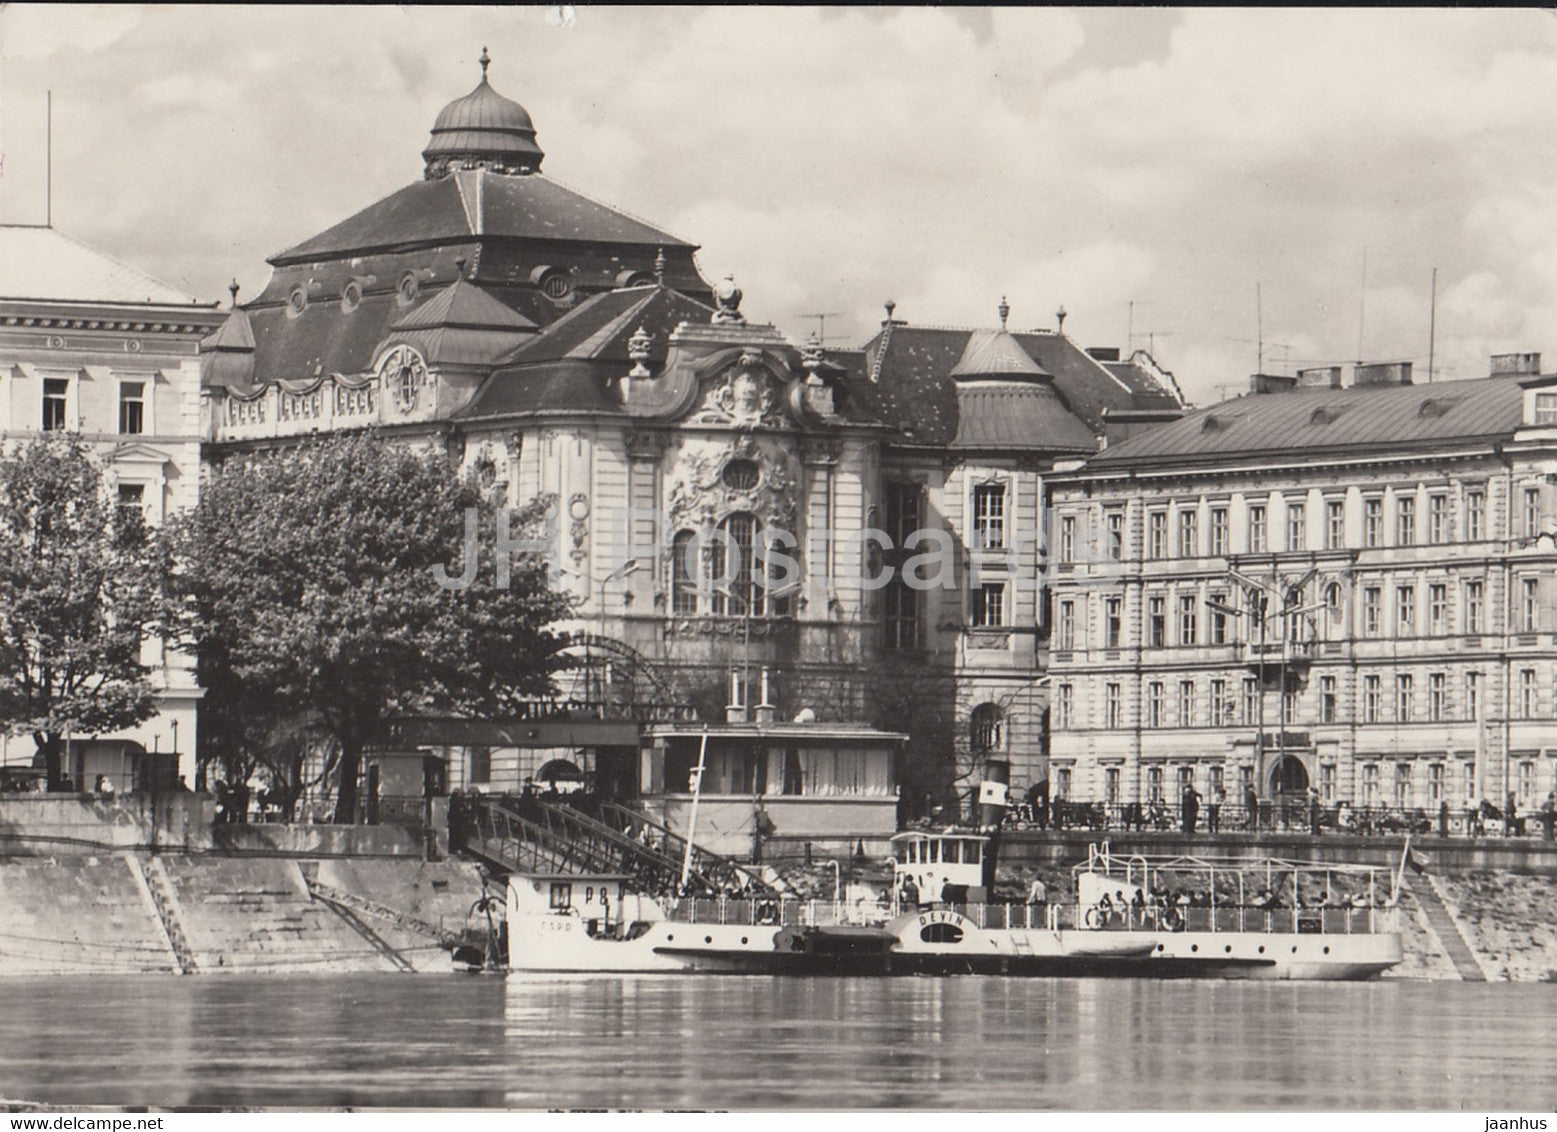 Bratislava - city view - steamer ship Devin - Czechoslovakia - Slovakia - used - JH Postcards